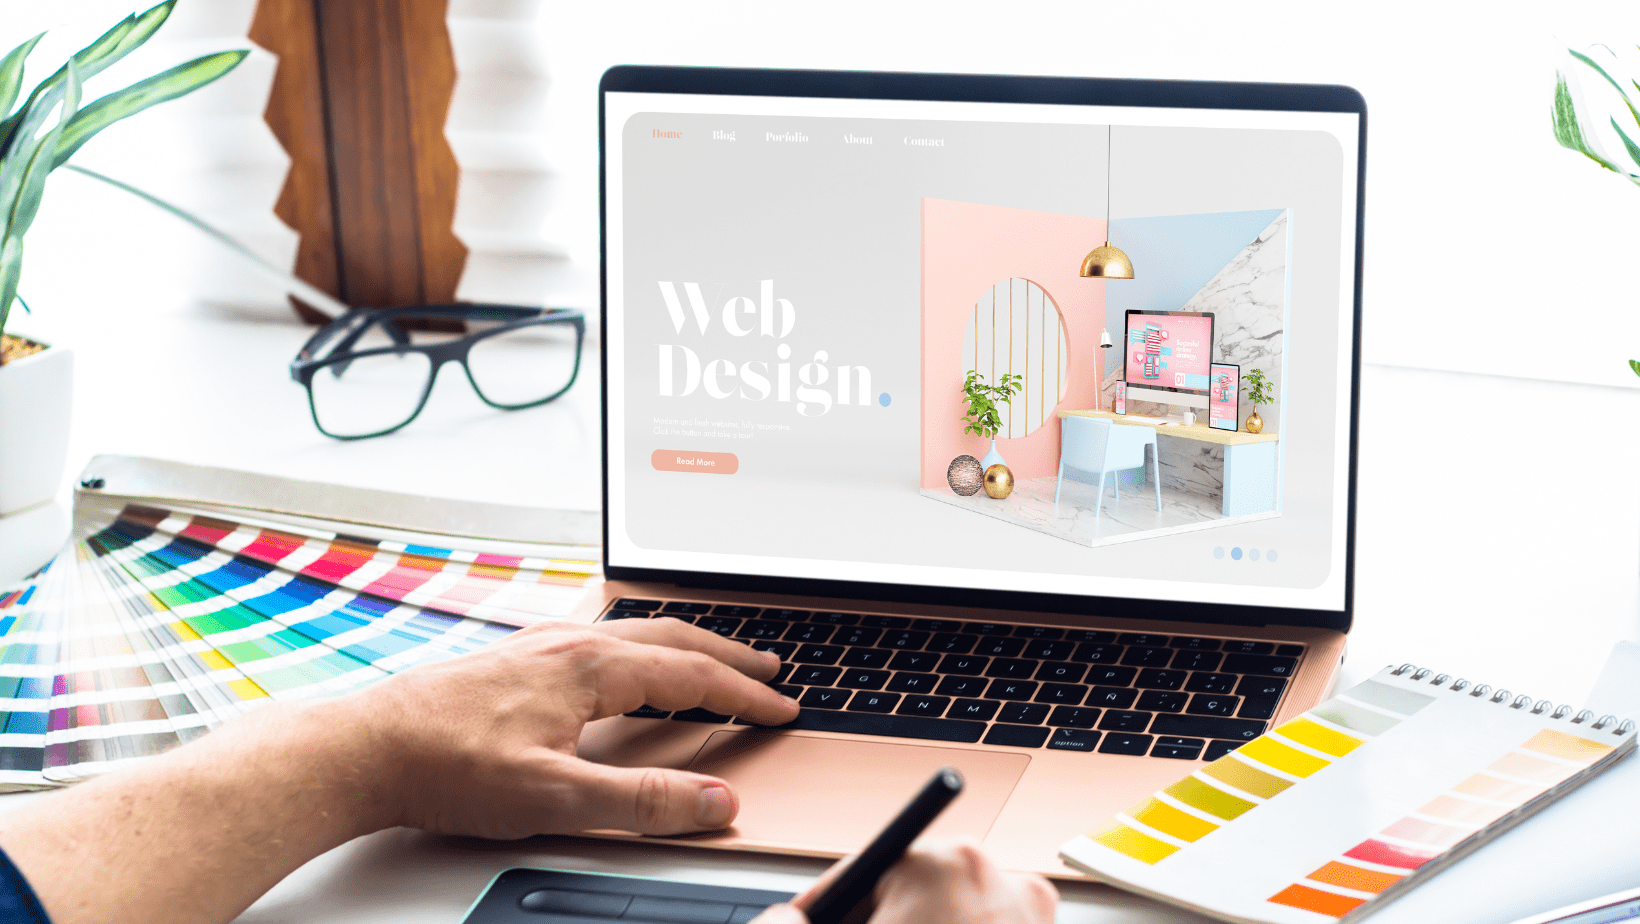 website design services india